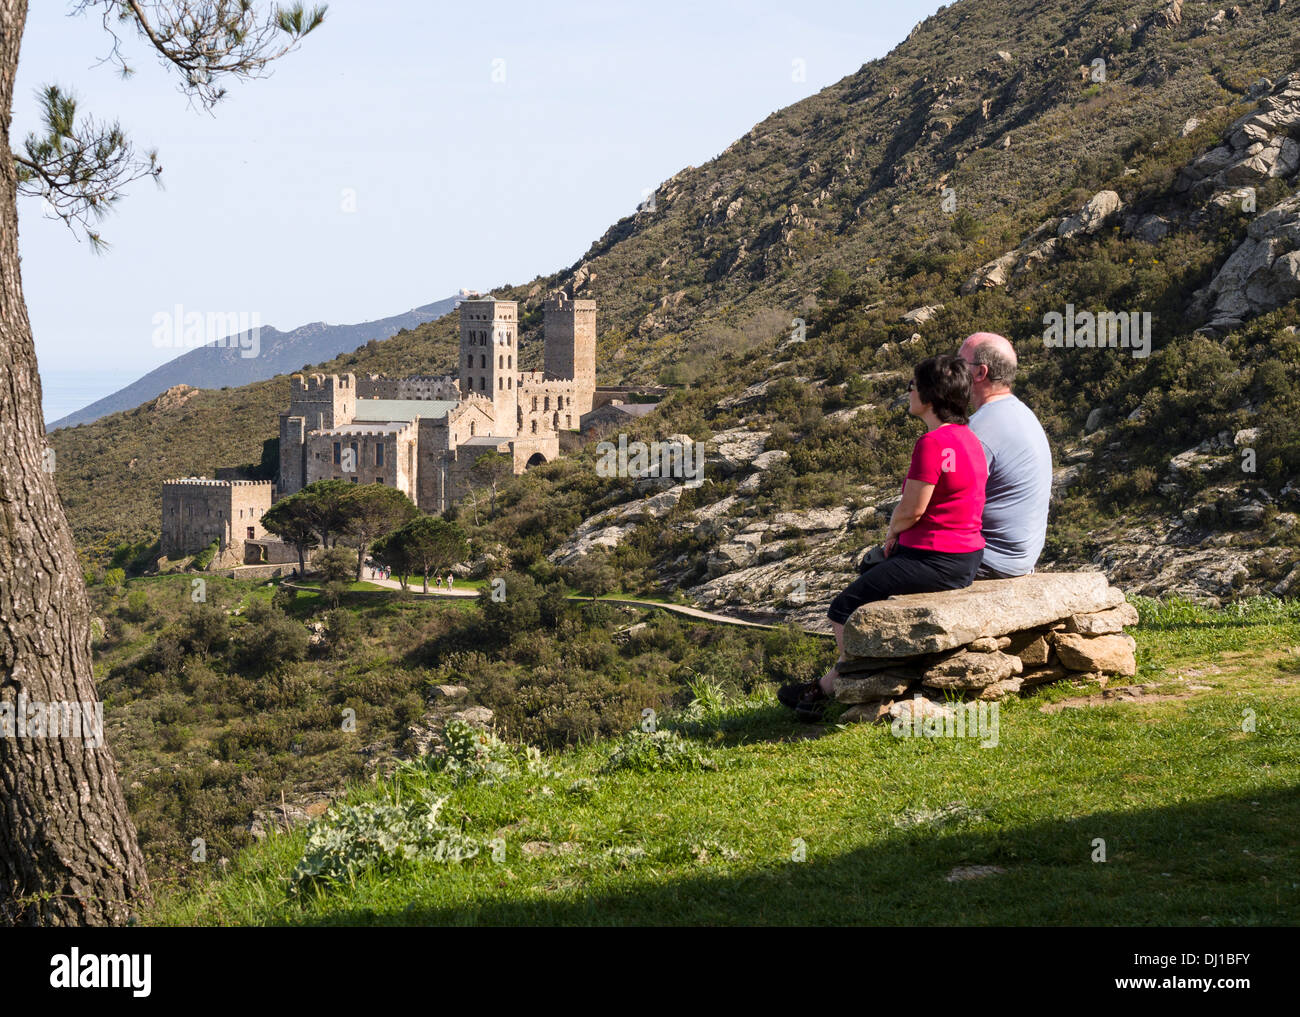 Bewundern Sie die Aussicht. Ein paar sitzt auf einer Steinbank und bewundert die Aussicht über die Hügel und vorbei an das Kloster Sant Pere de Rodes. Stockfoto